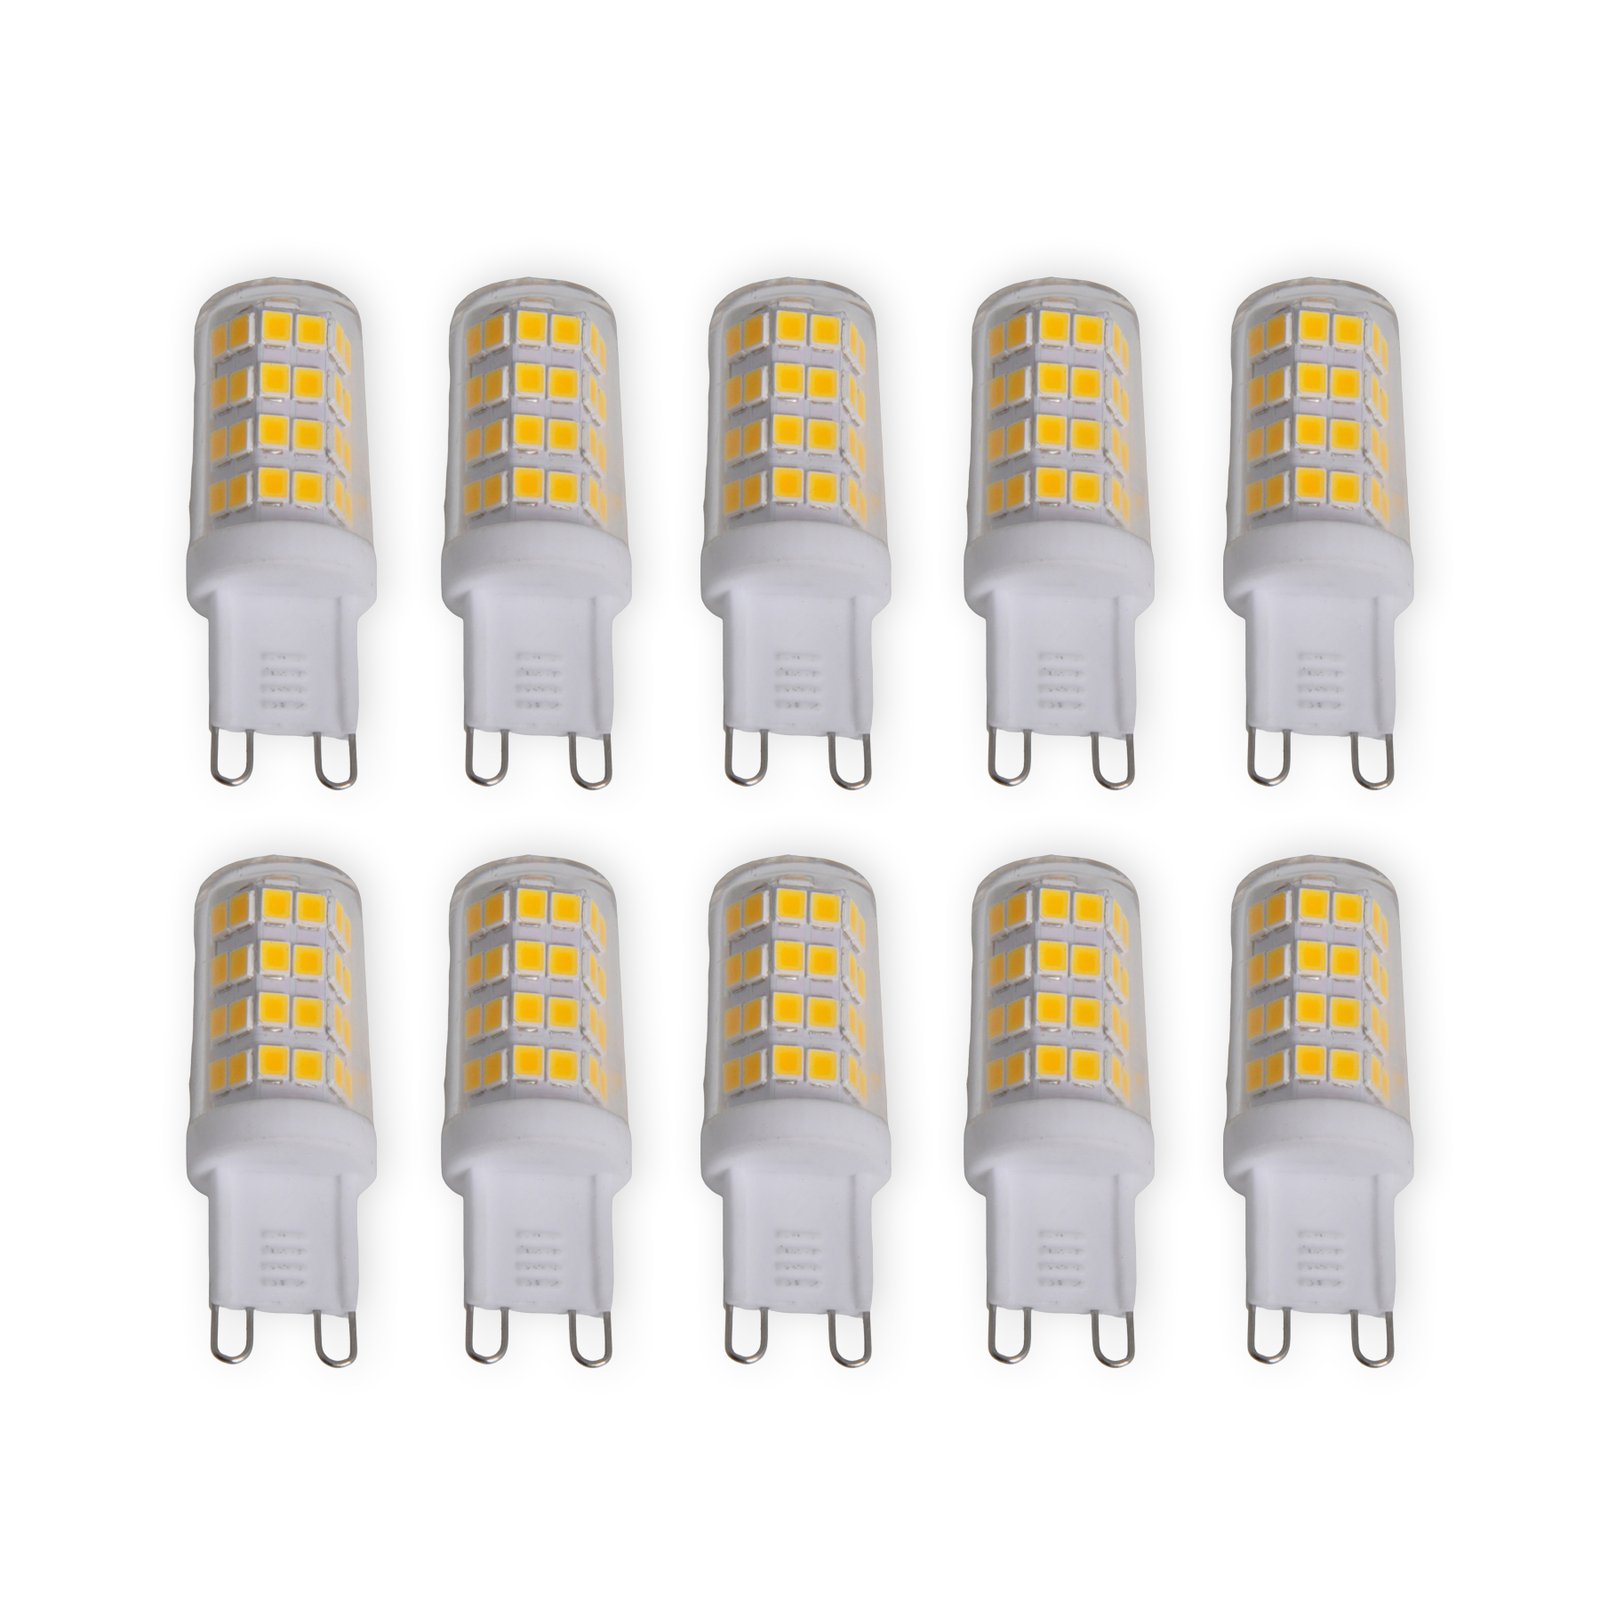 Bi-pin LED bulb G9 3 W, warm white, 330 lm 10-pack